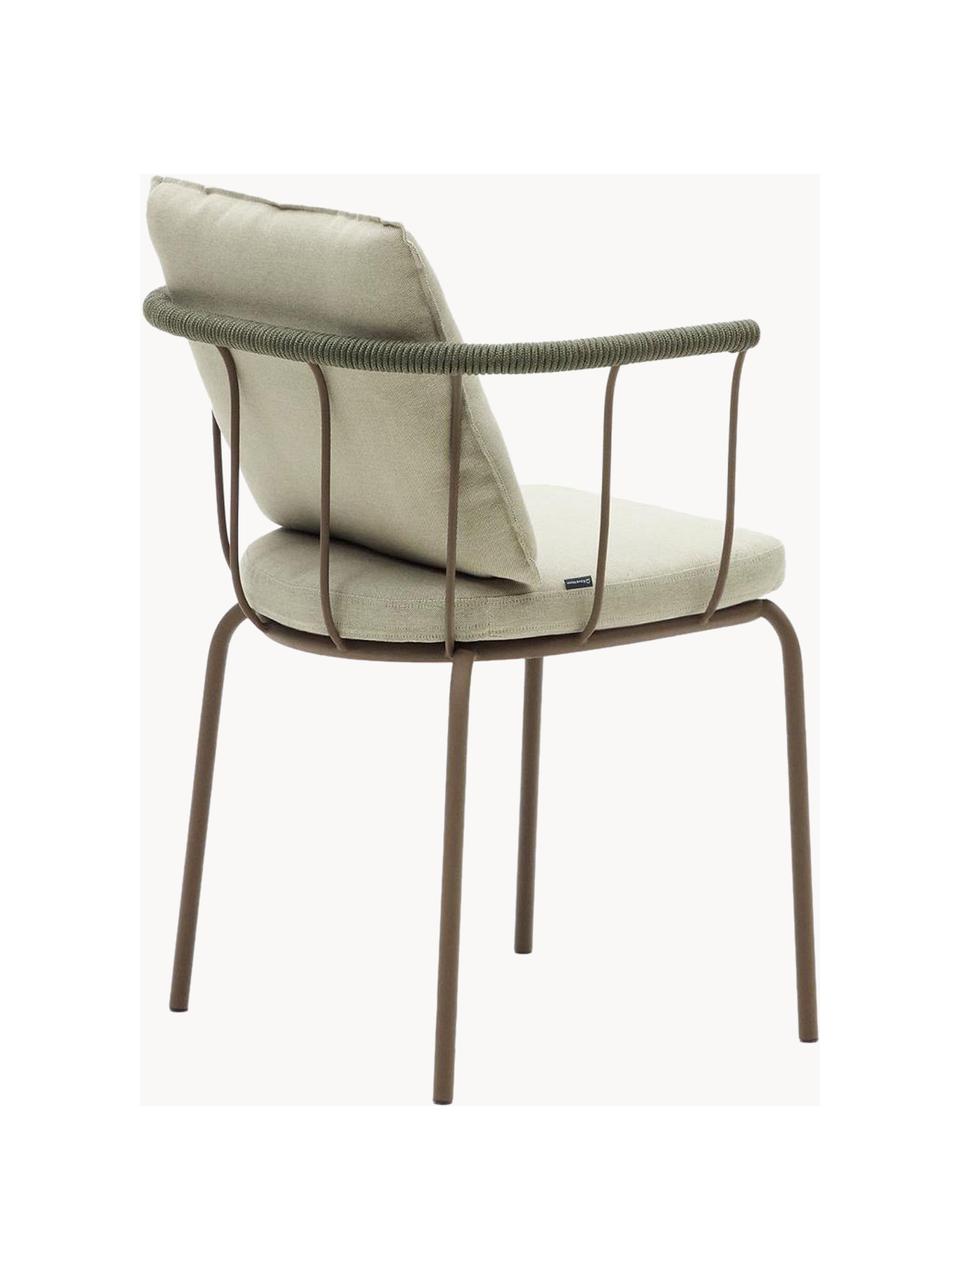 Ogrodowe krzesło z tapicerowanym siedziskiem Jay, Tapicerka: 100% poliester, Stelaż: metal malowany proszkowo, Jasnobeżowa tkanina, greige, S 59 x G 52 cm